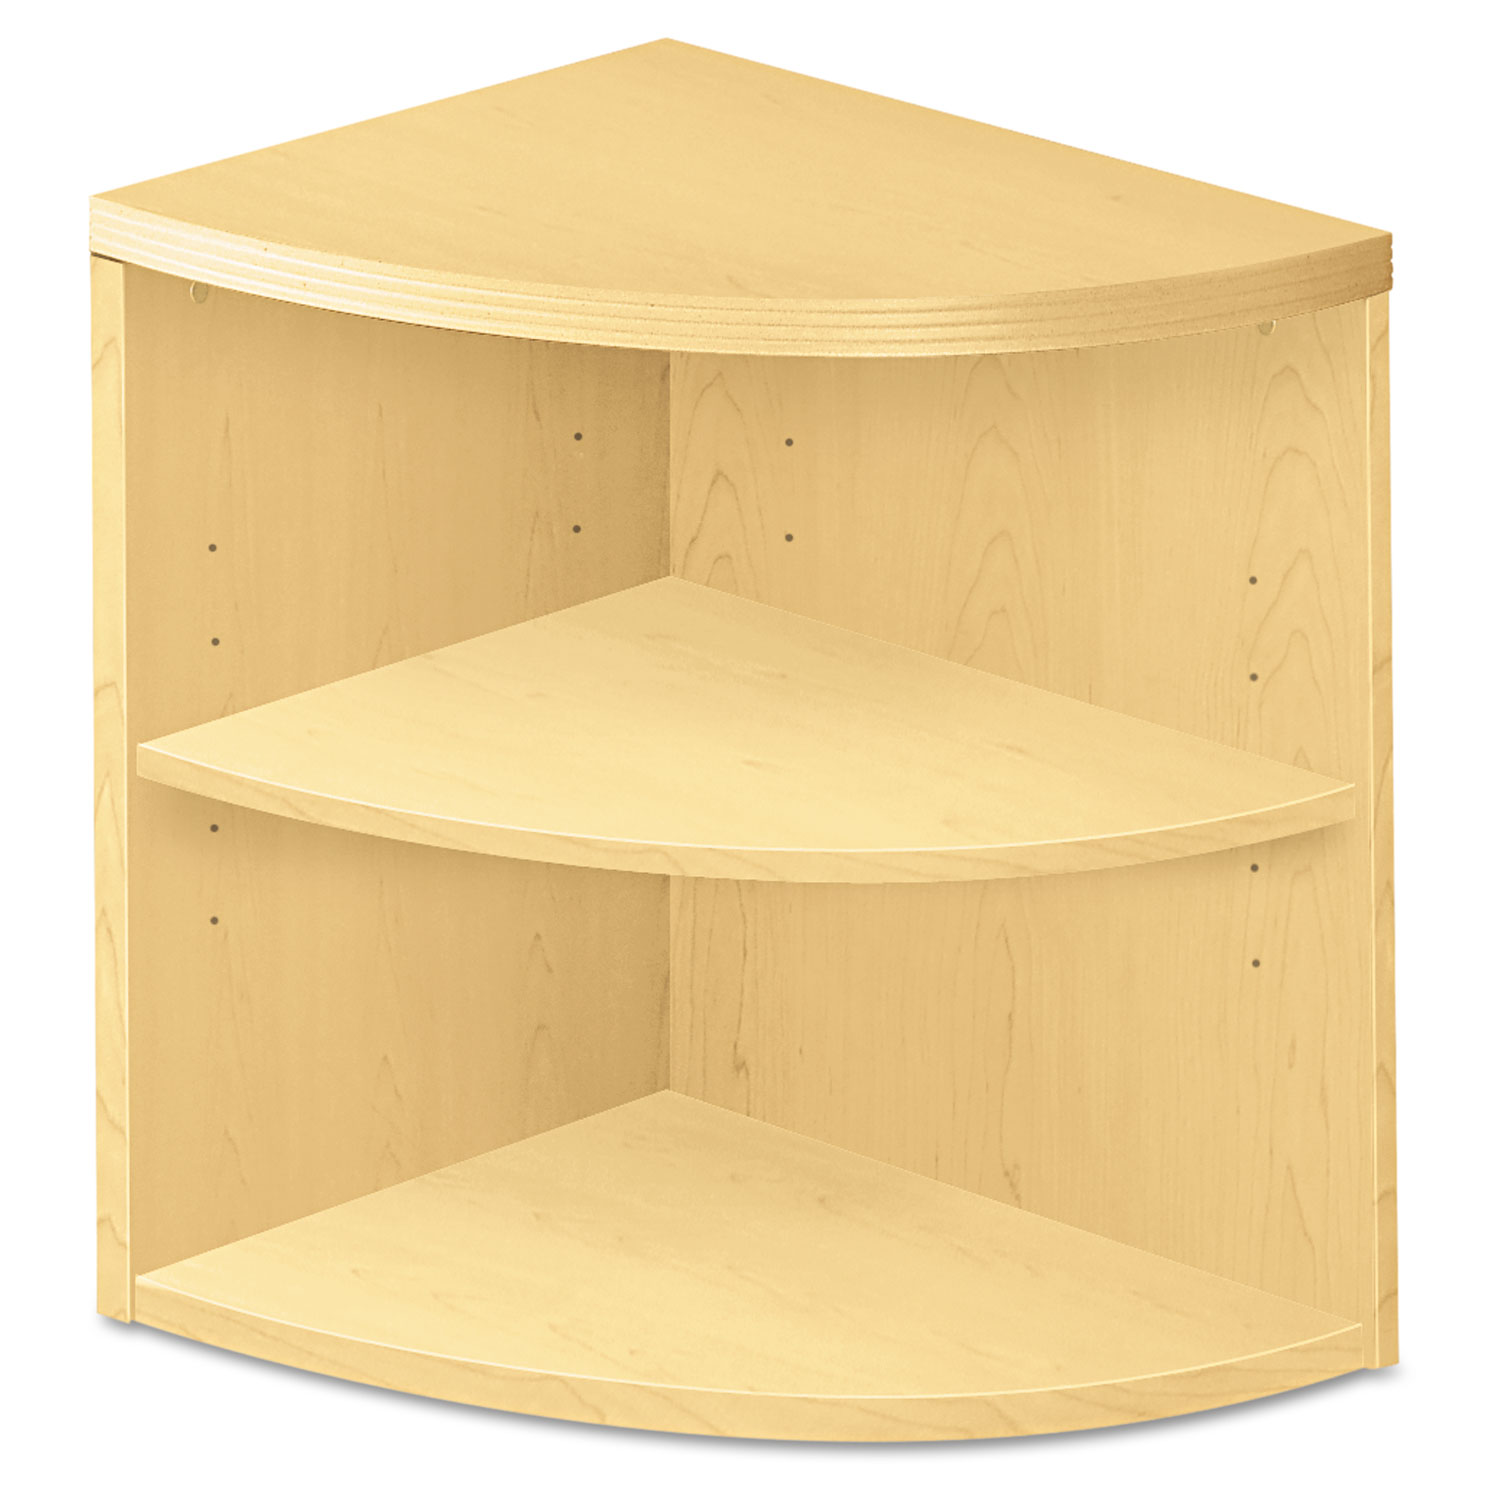  HON H115520.A.DD Valido Series Two-Shelf End Cap Bookshelf, 24w x 24d x 29-1/2h, Natural Maple (HON115520AXDD) 